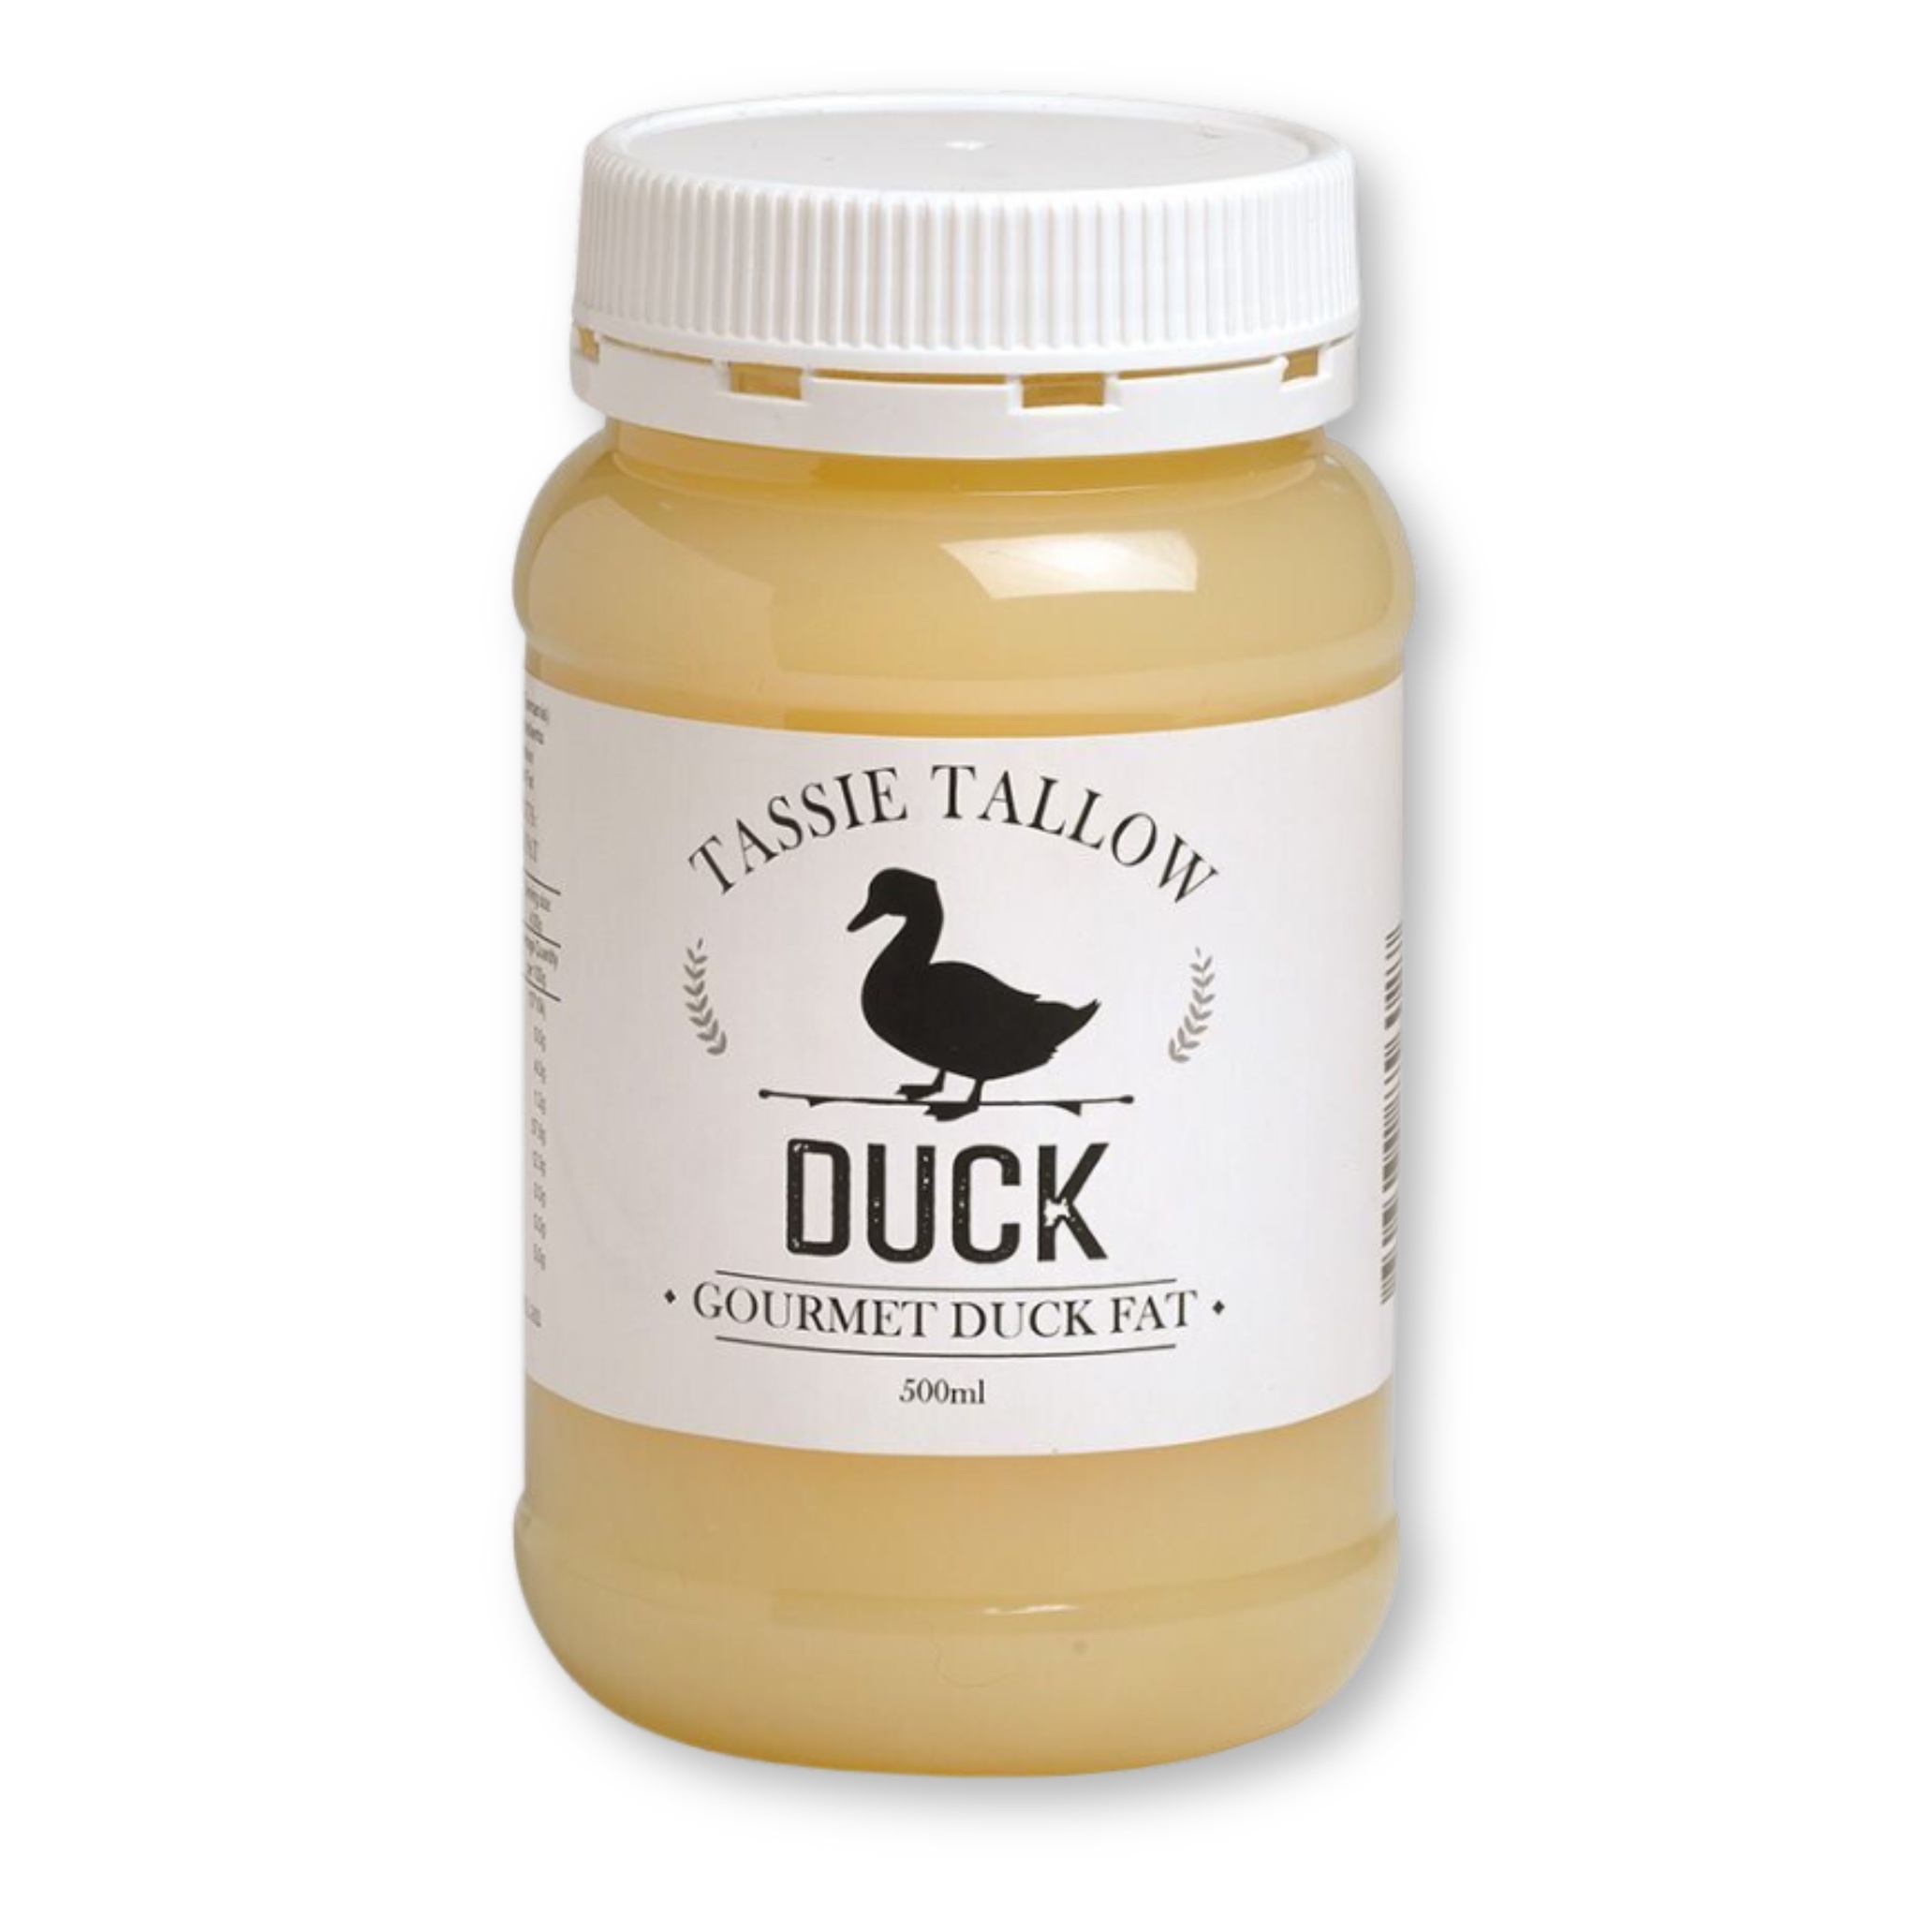 Tassie Tallow Duck Fat 500mls